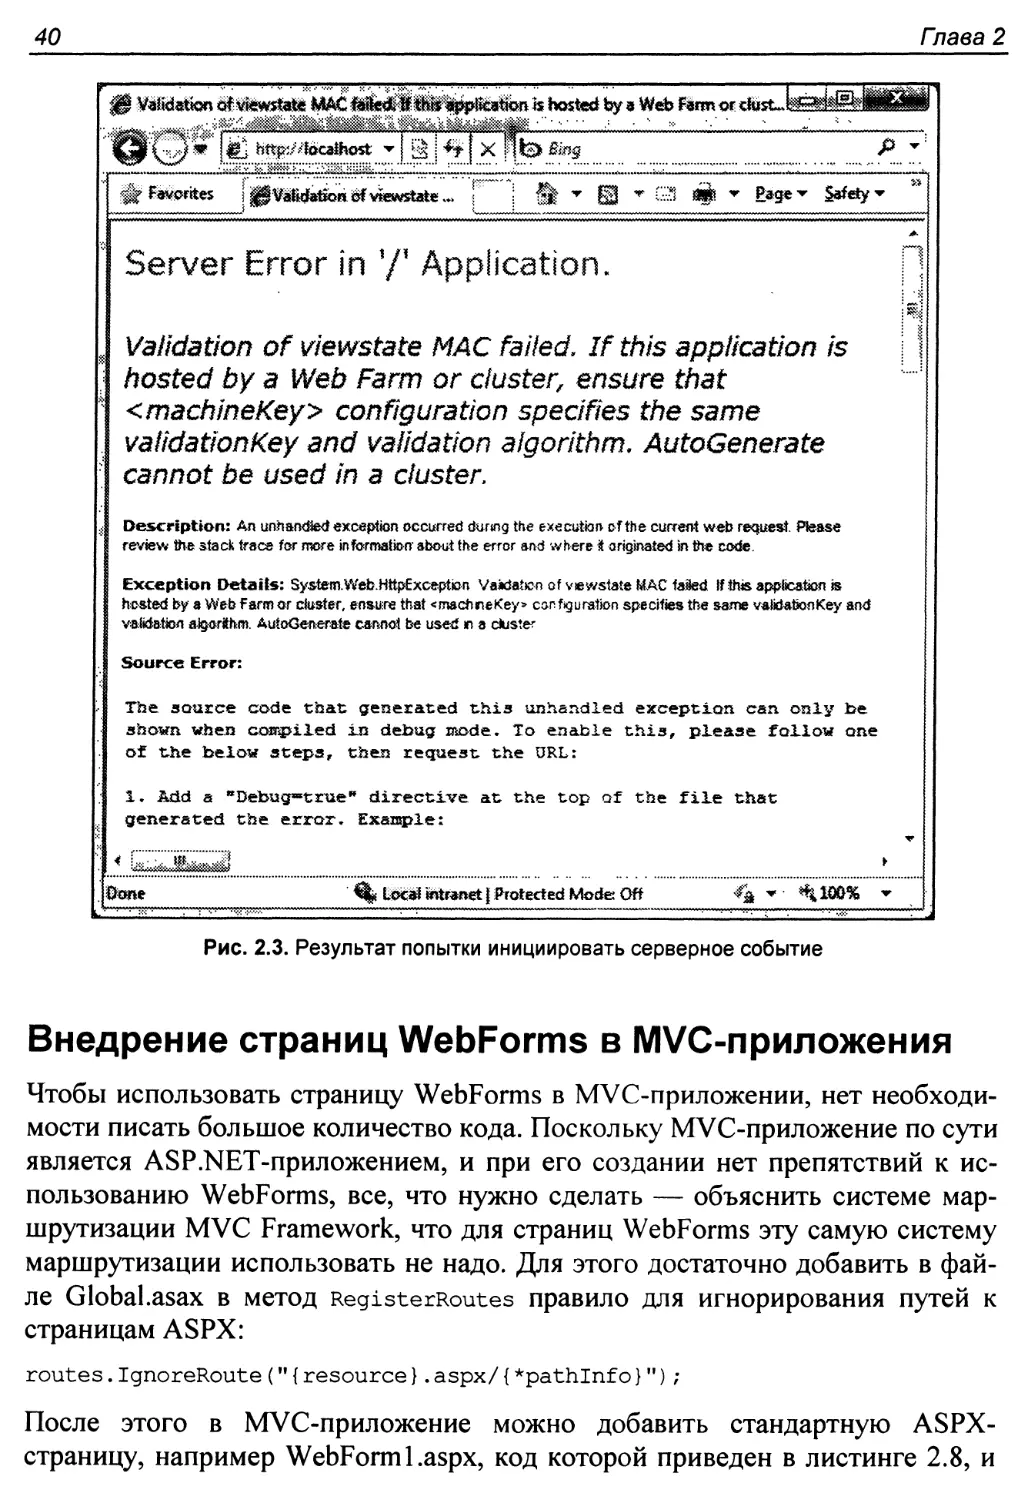 Внедрение страниц WebForms в MVC3приложения